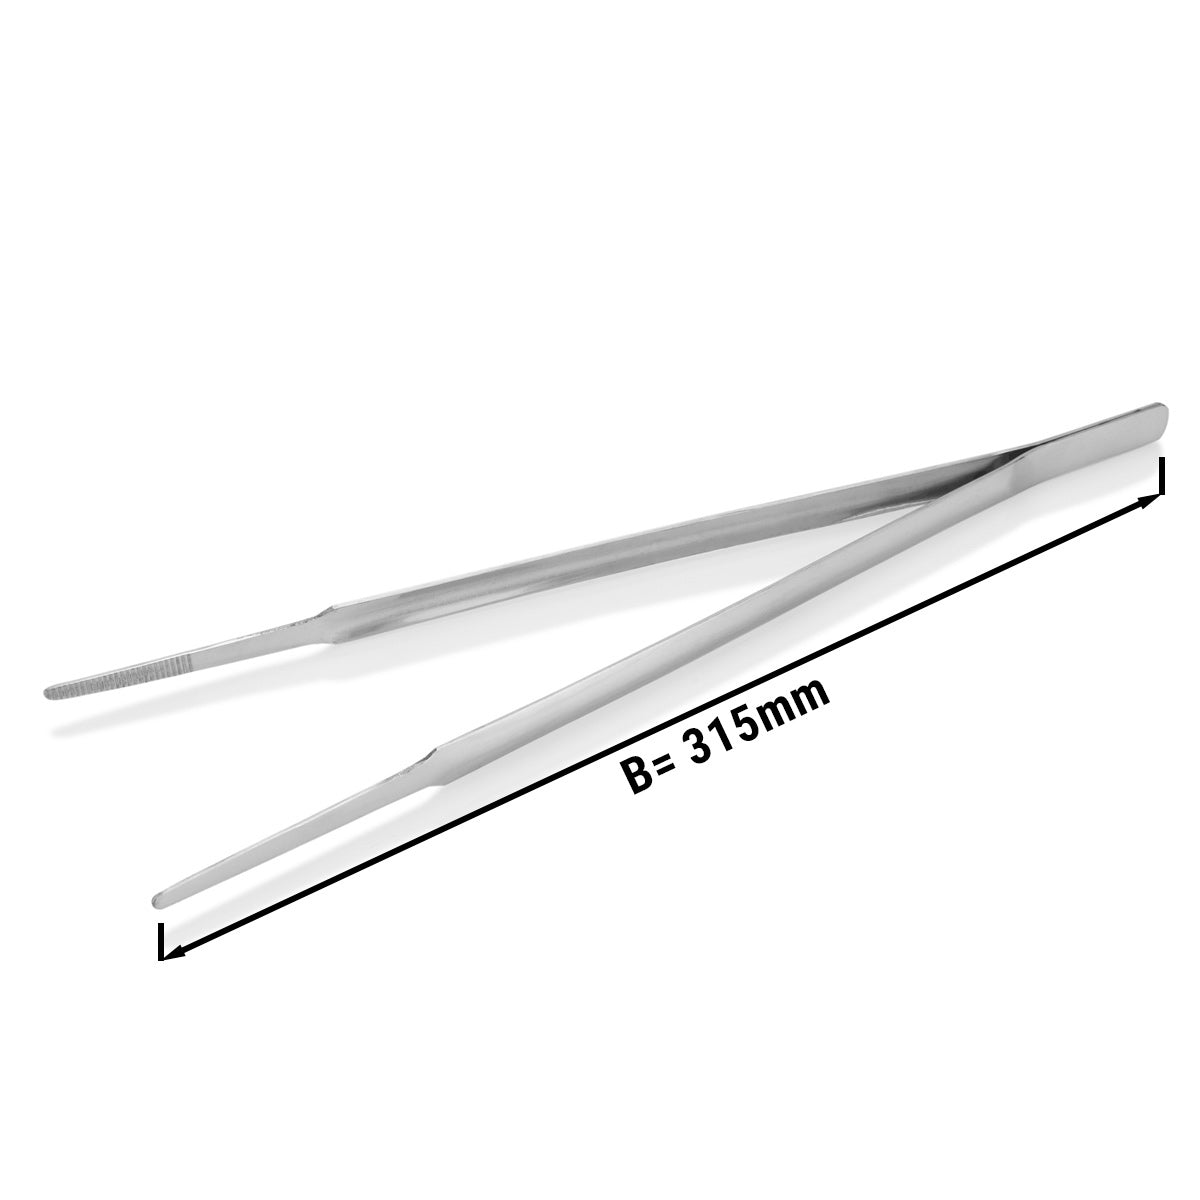 Fiskepinsett - lengde: 31,5 cm